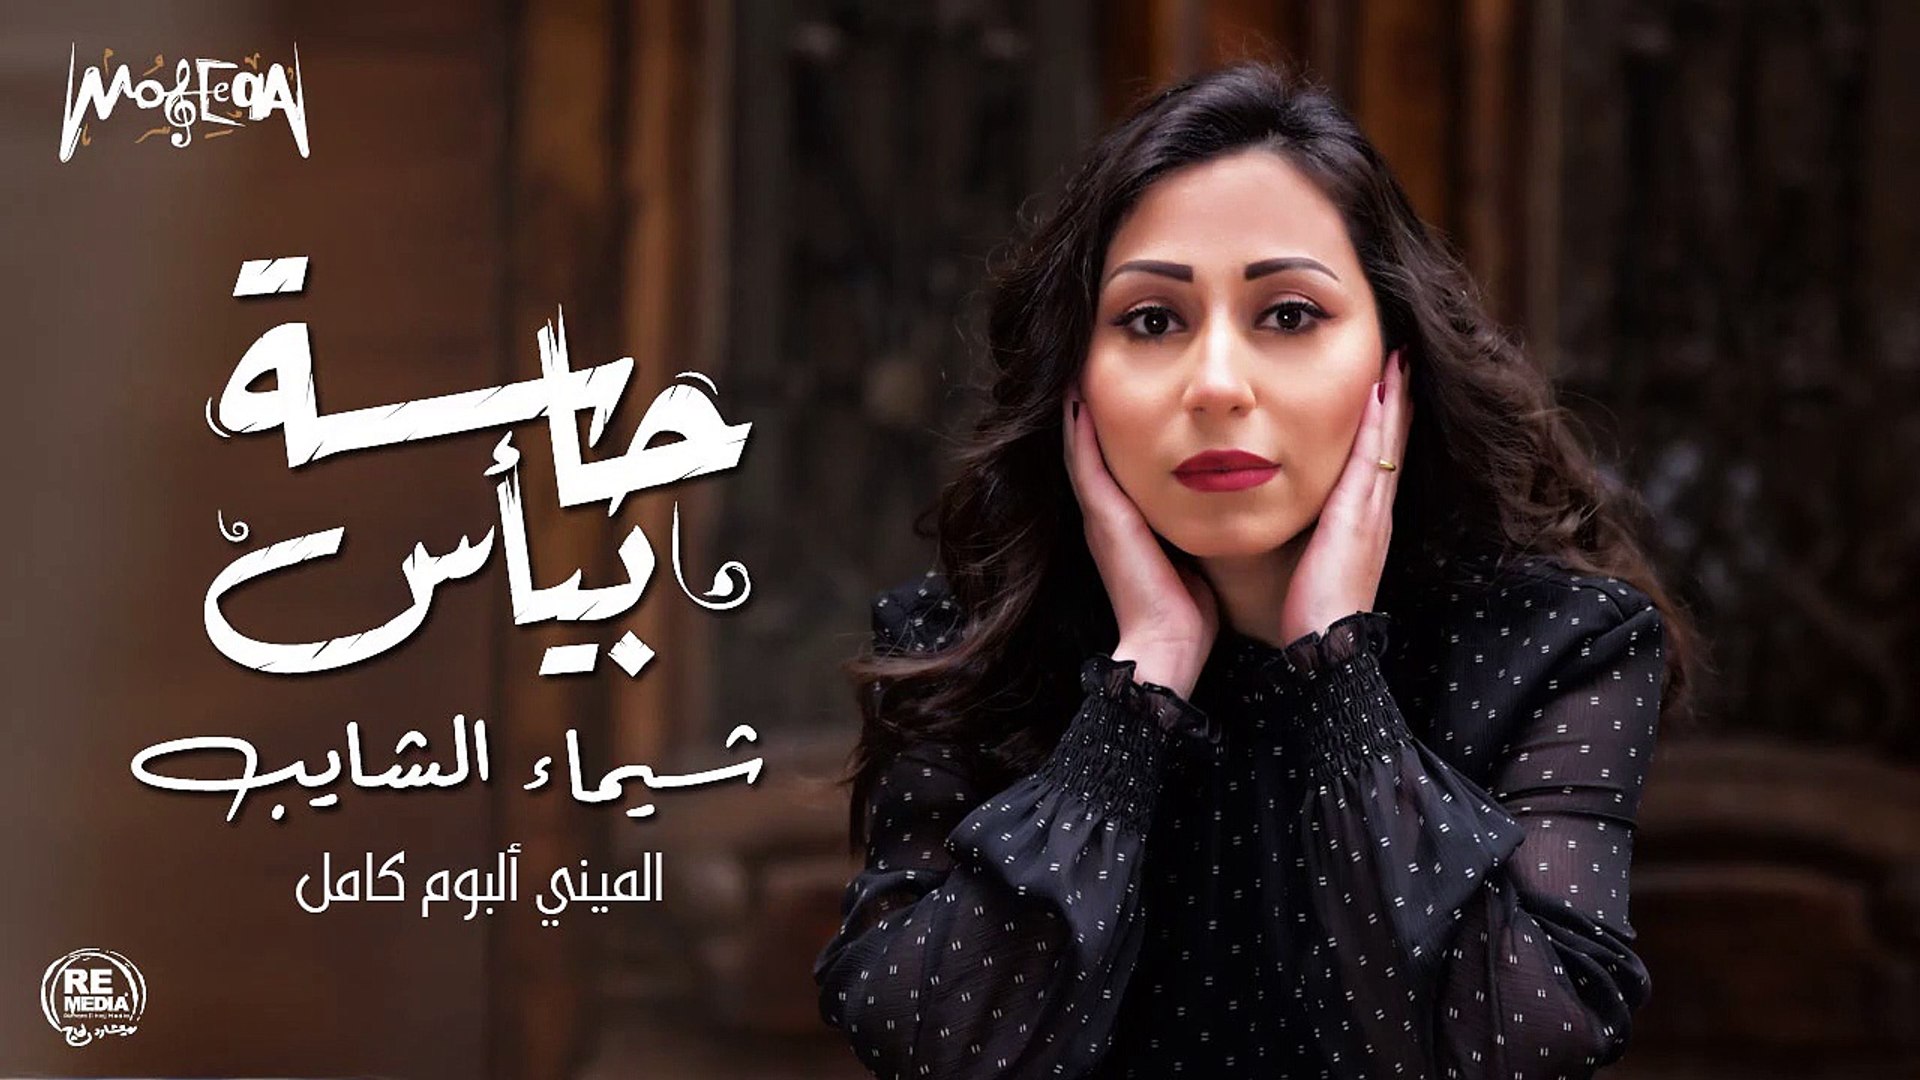 شيماء الشايب - ميني ألبوم حاسة بيأس كامل 2019 - video Dailymotion